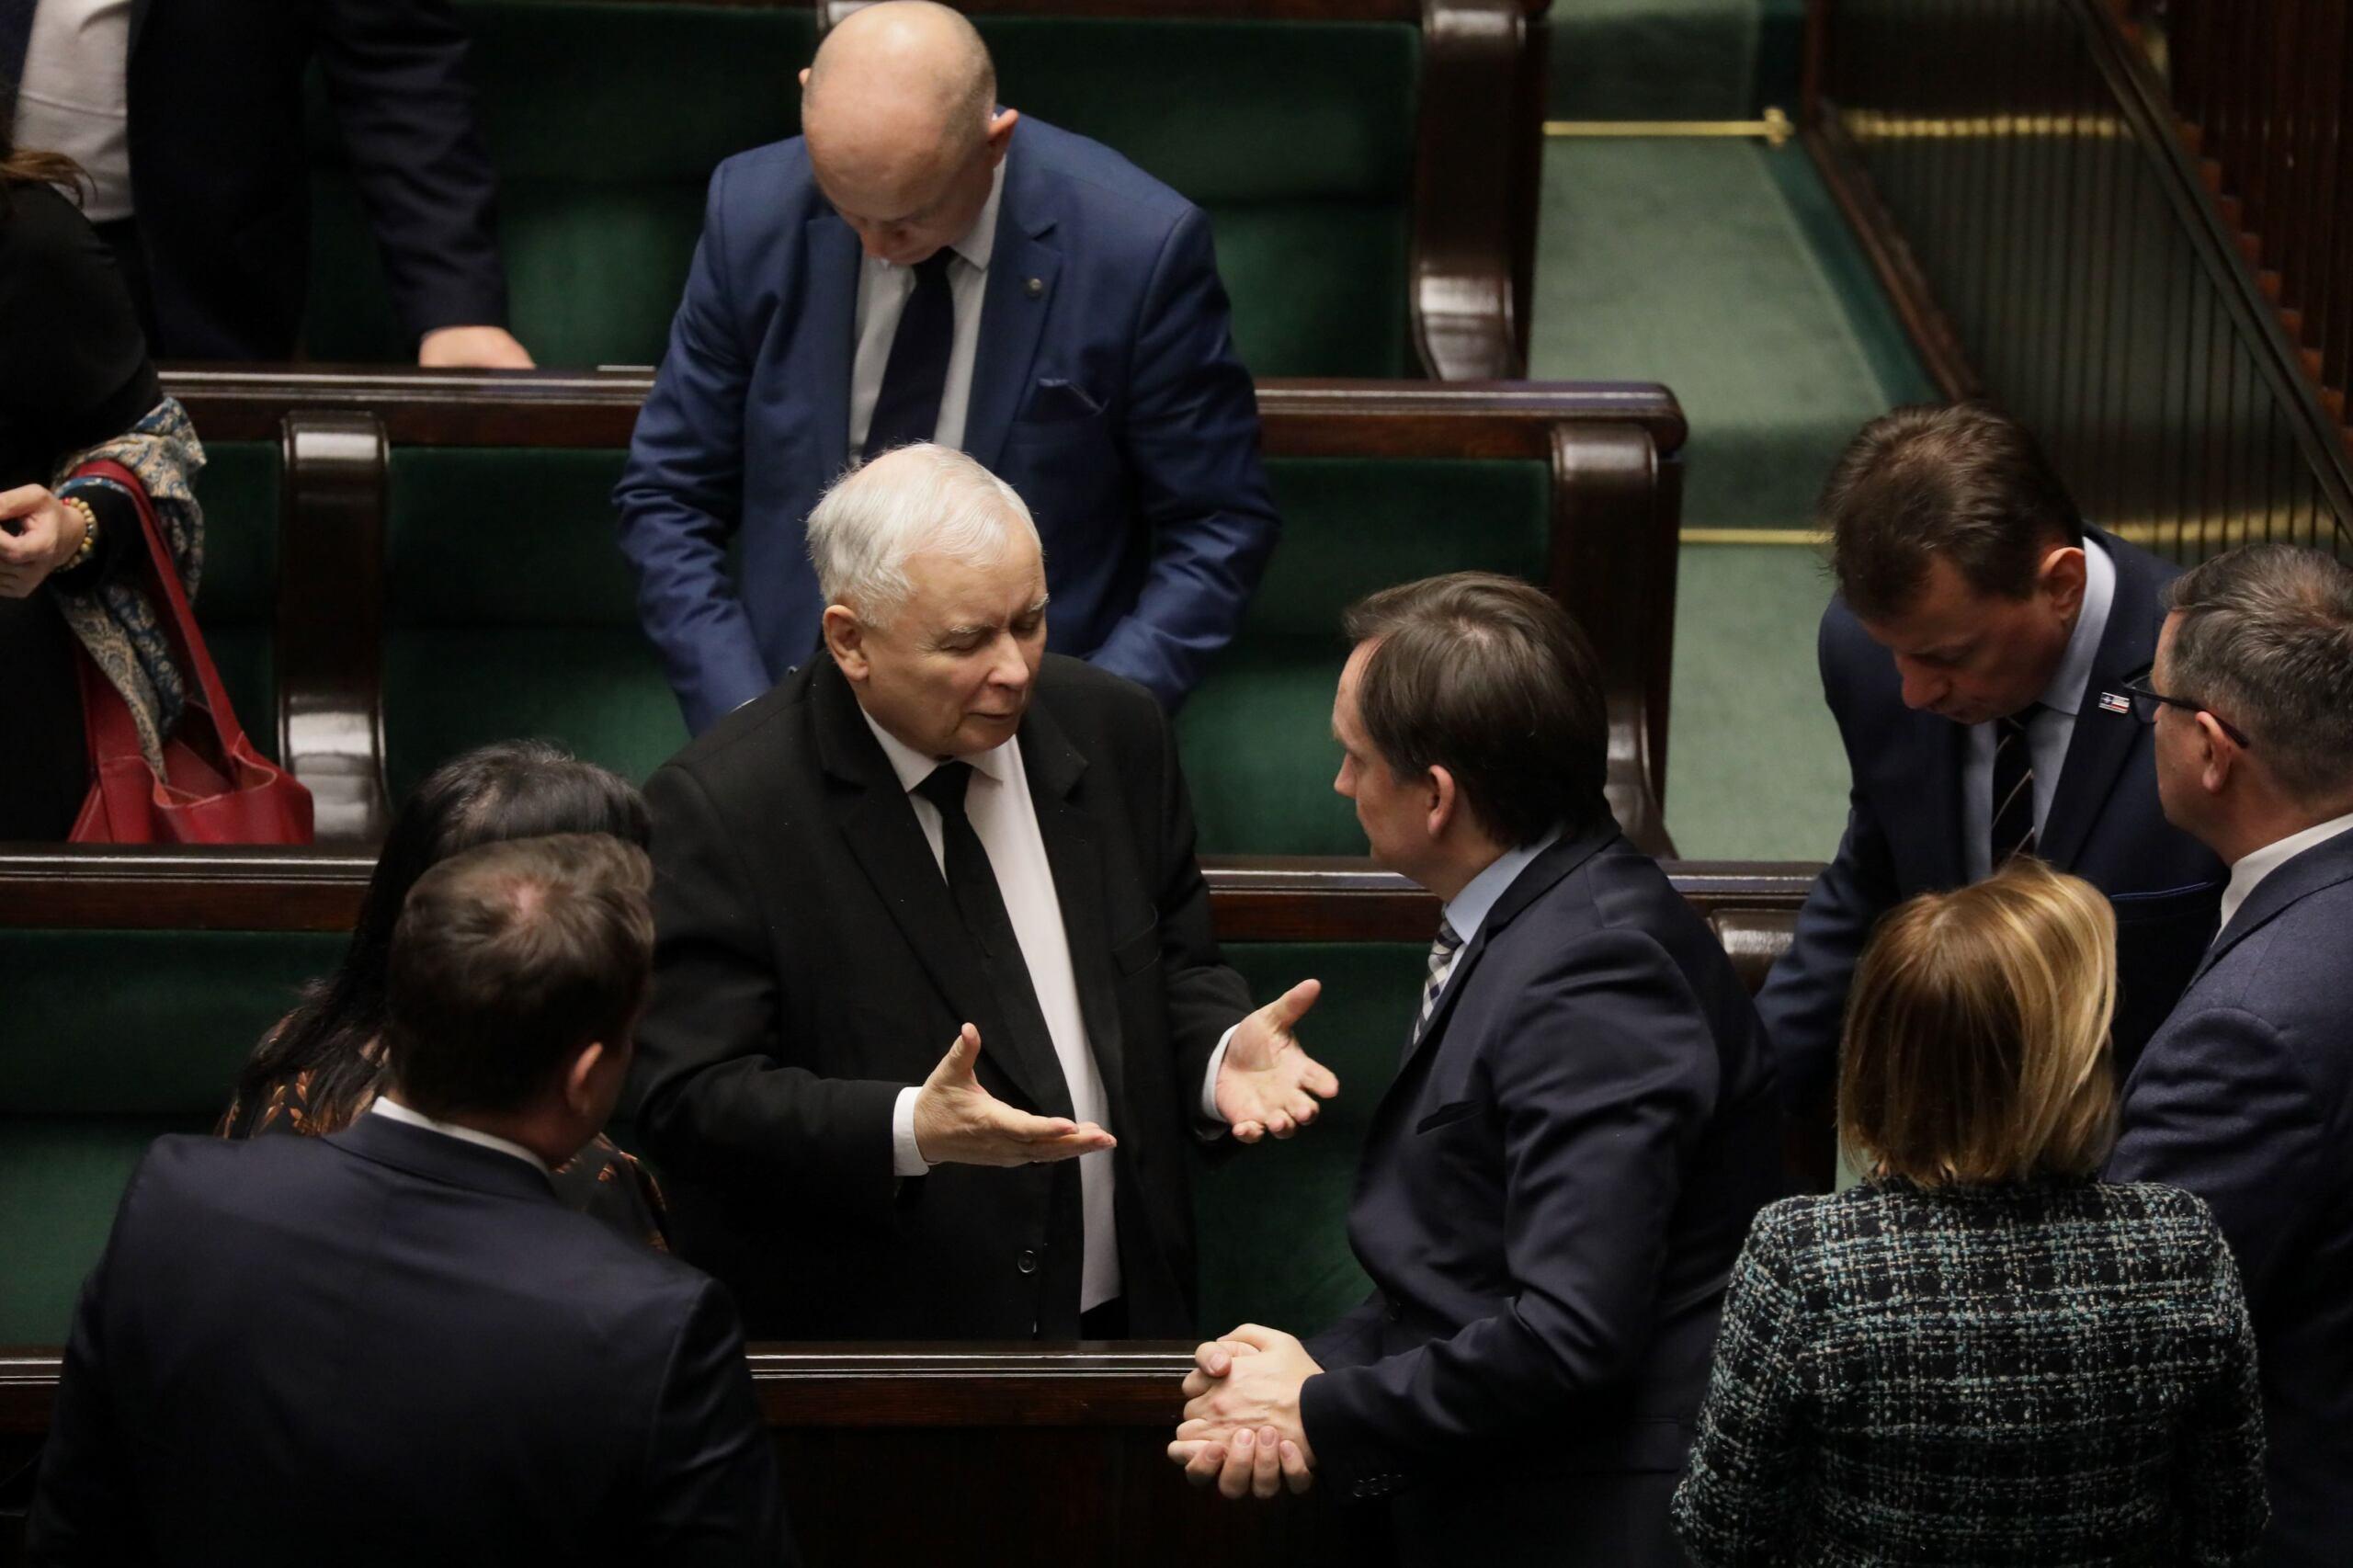 Zbigniew Ziobro i Jarosław Kaczyński w Sejmie